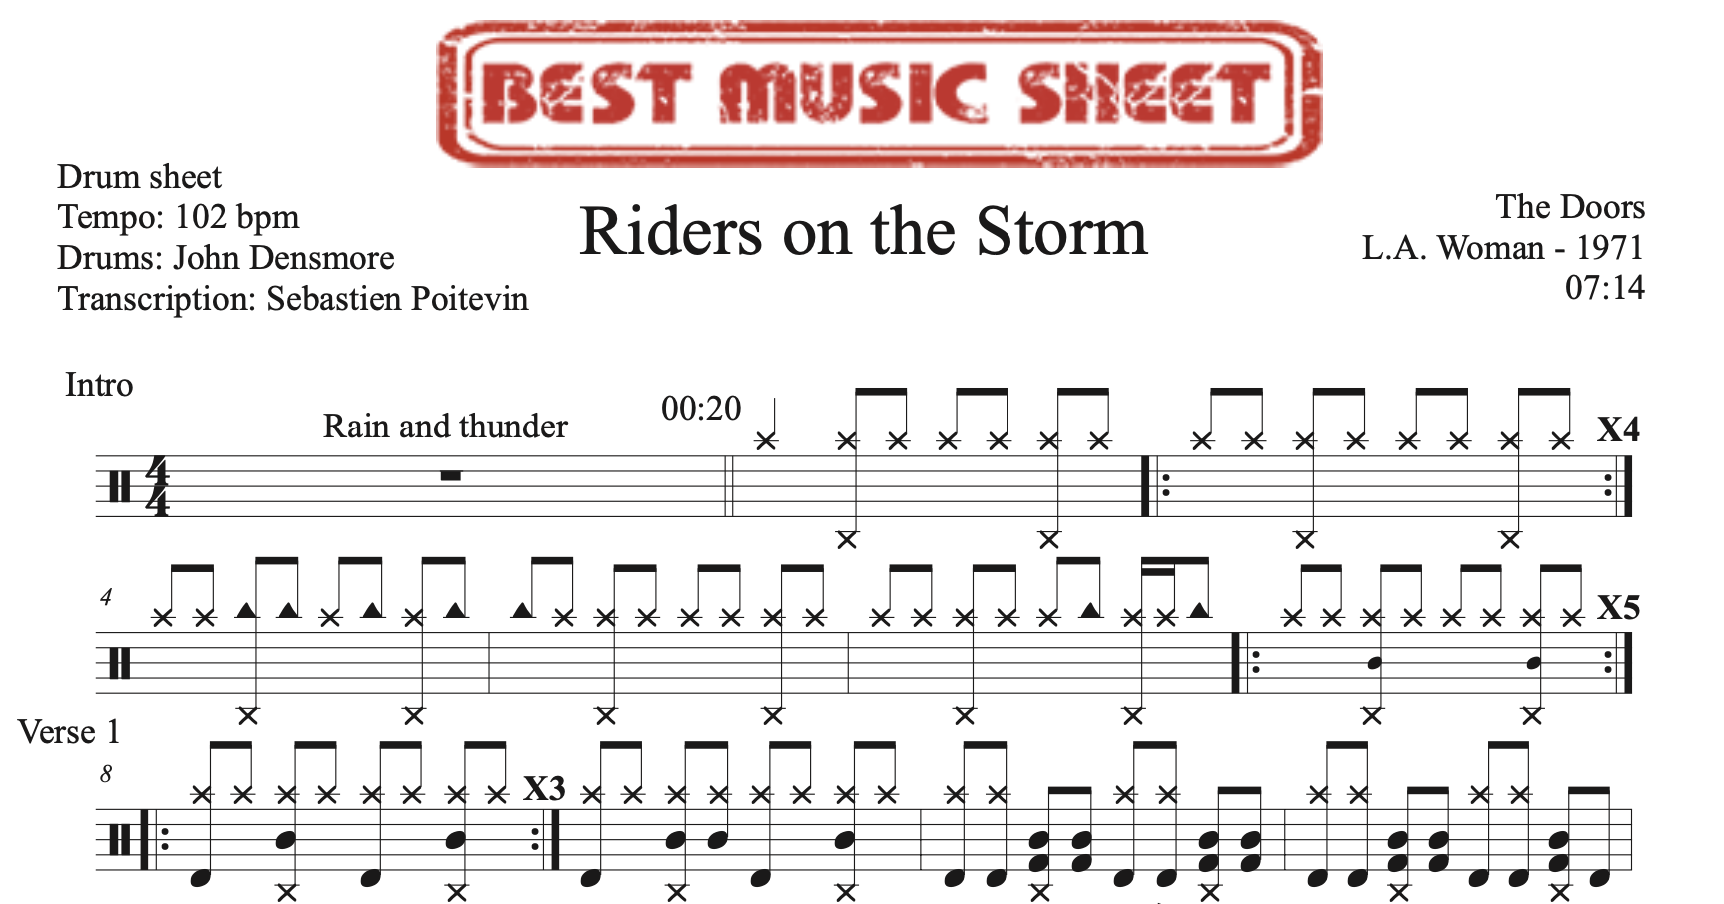 Extrait partition de batterie Riders on the Storm par The Doors